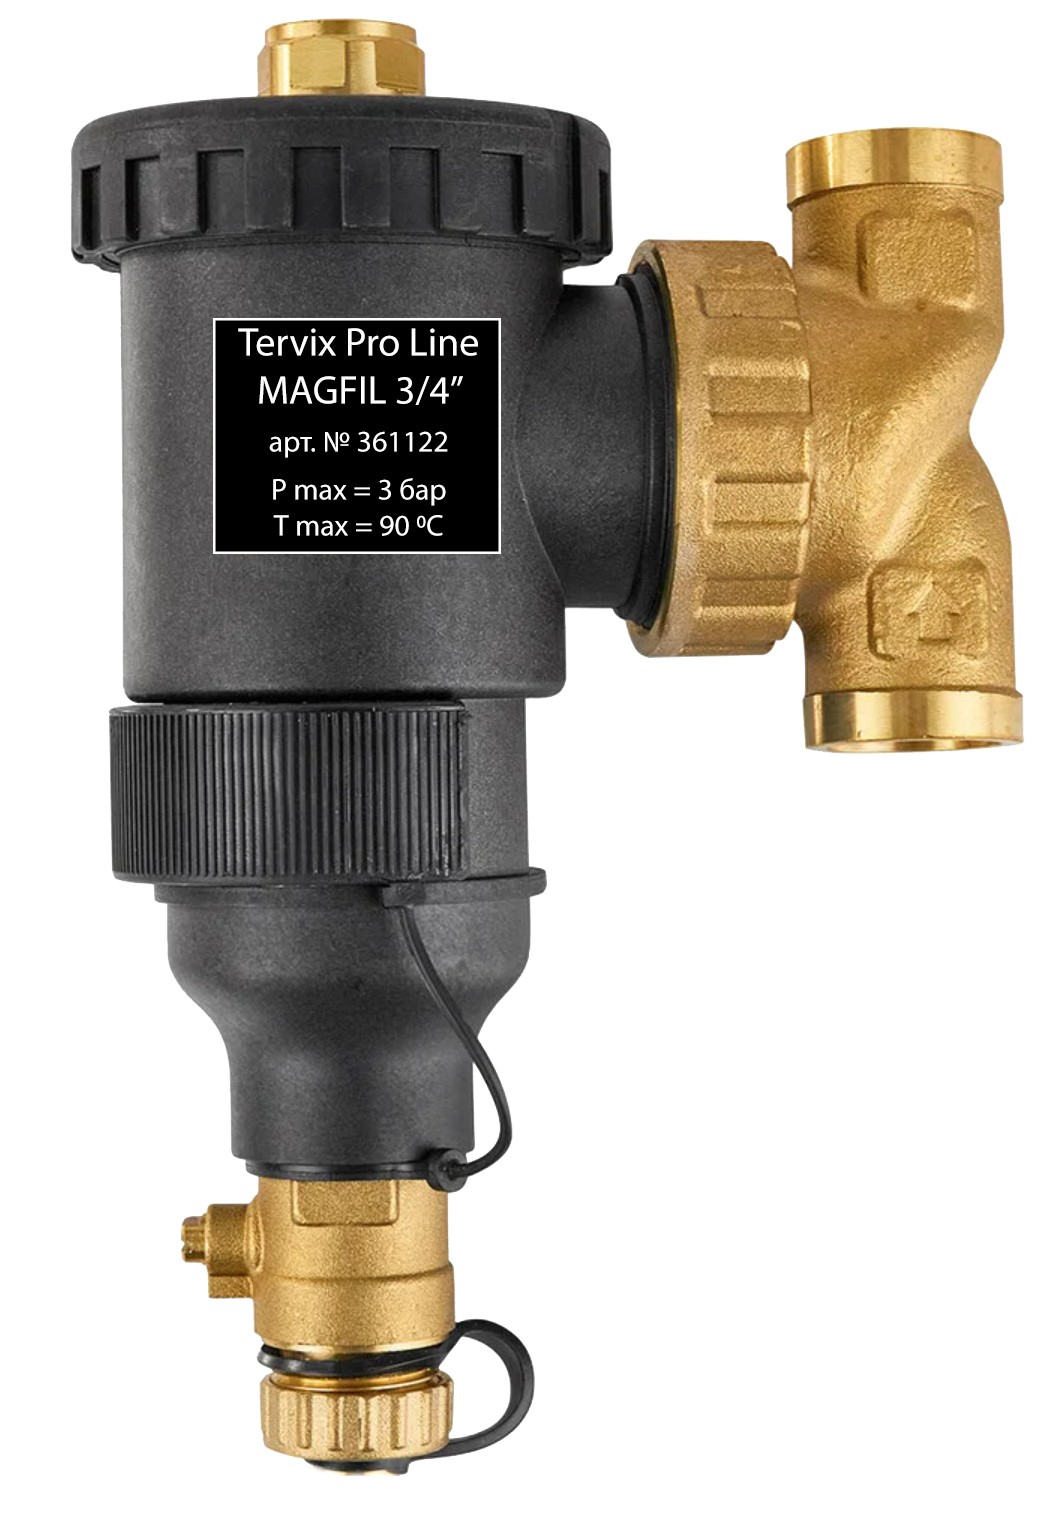 Сетчатый фильтр для воды Tervix Pro Line Mgfil 3/4" (361122)